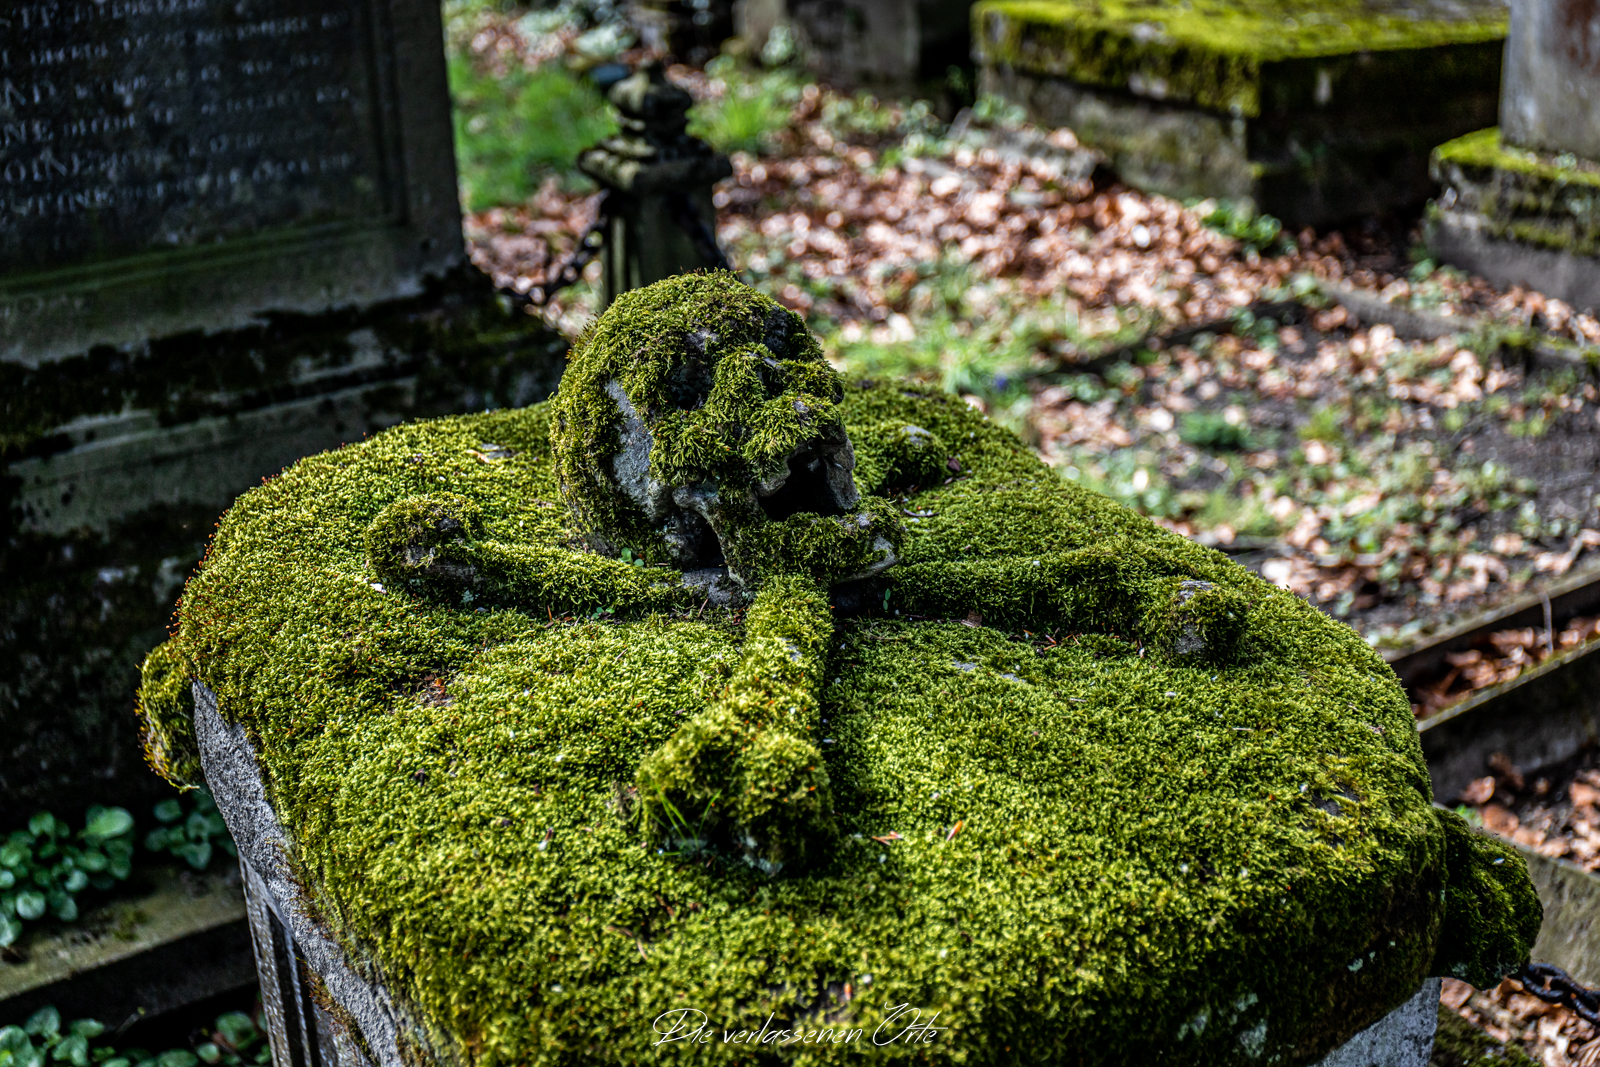 Cemetery of the Skull